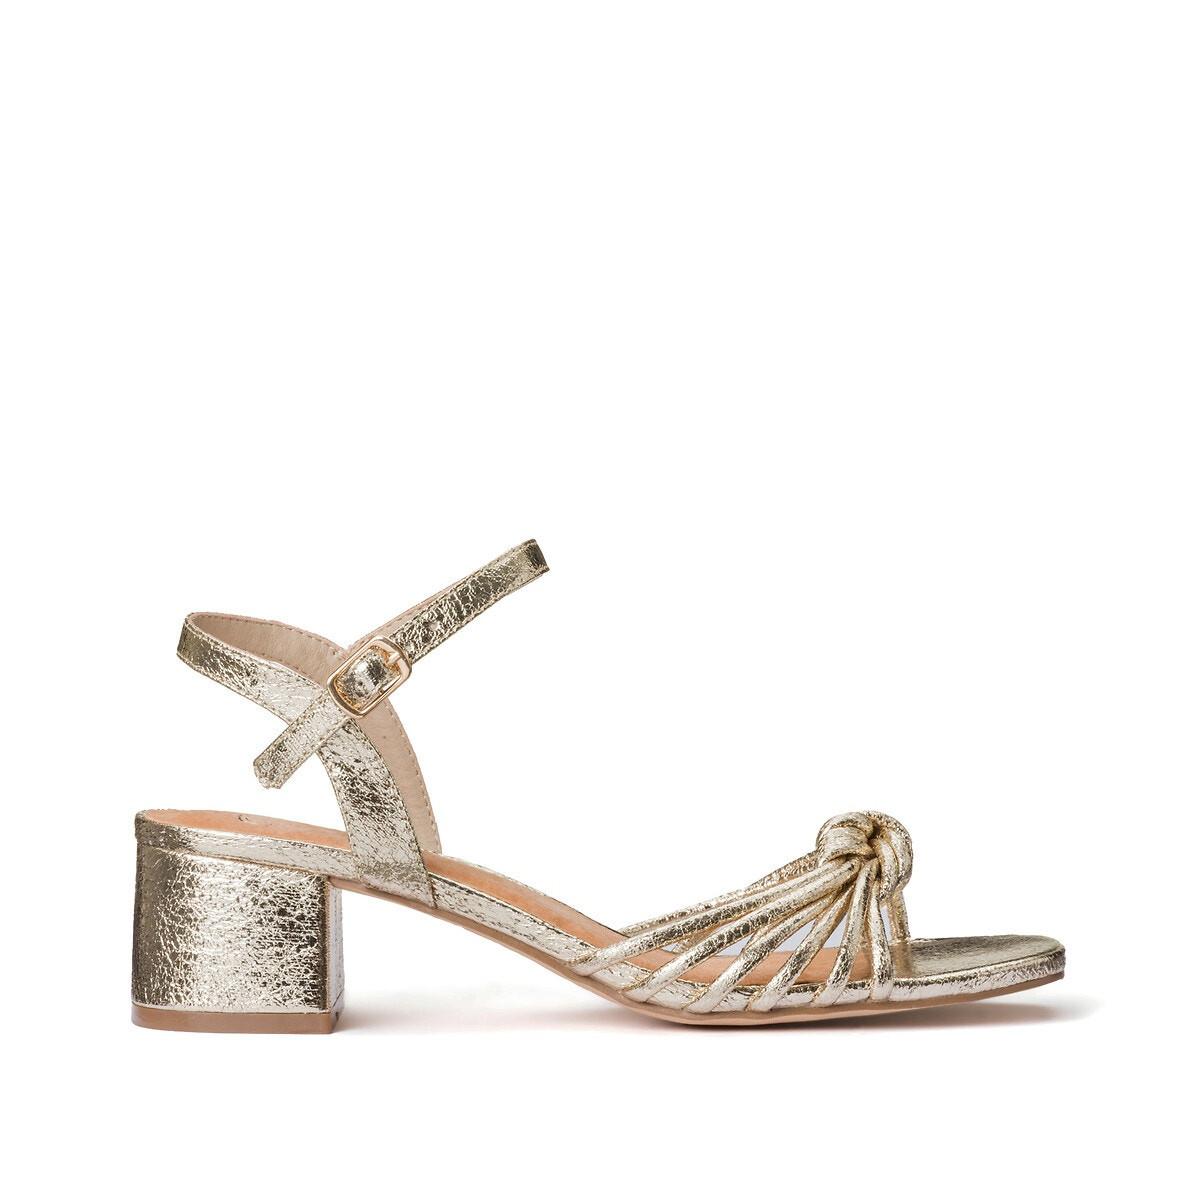 Riemen-sandaletten In Metallic-optik Damen Gold 39 von La Redoute Collections